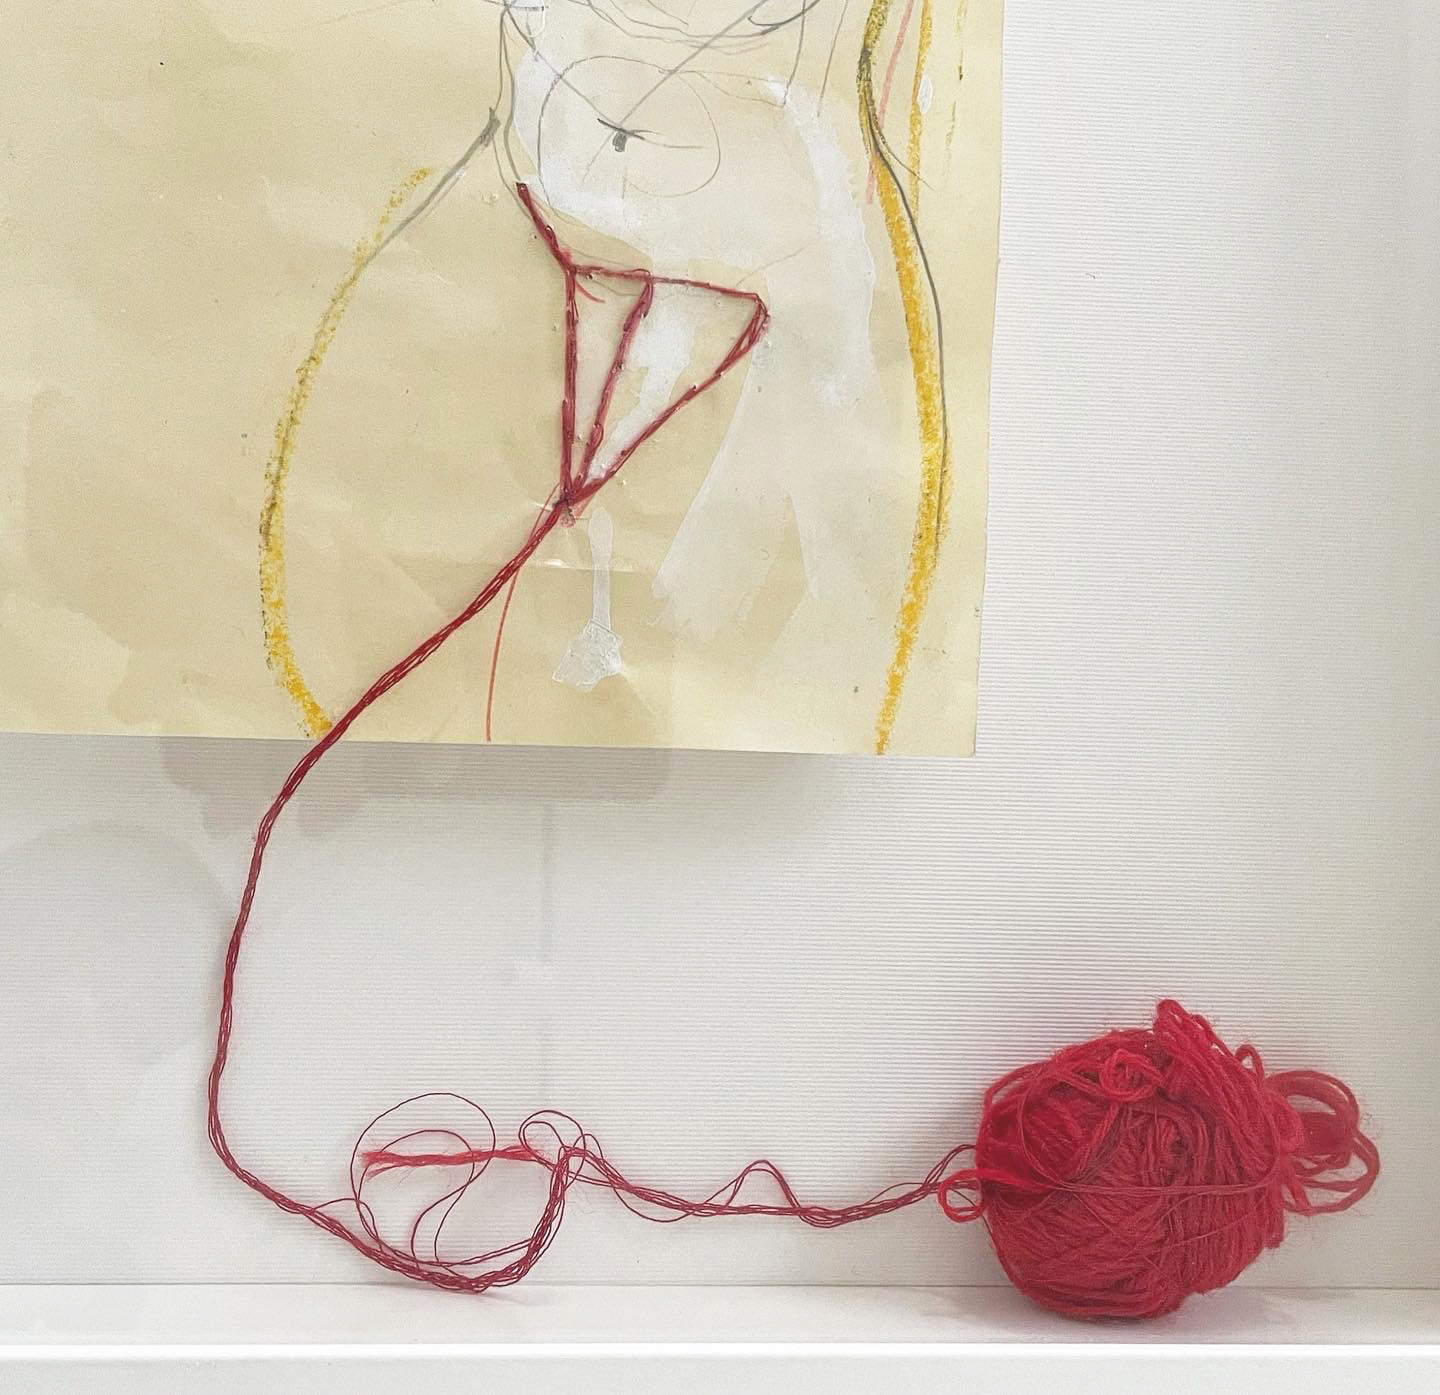 Serena Giorgi, Fil rouge, 1995 / 2015, composizione in tecnica mista su carta trovata, 57x 42 cm